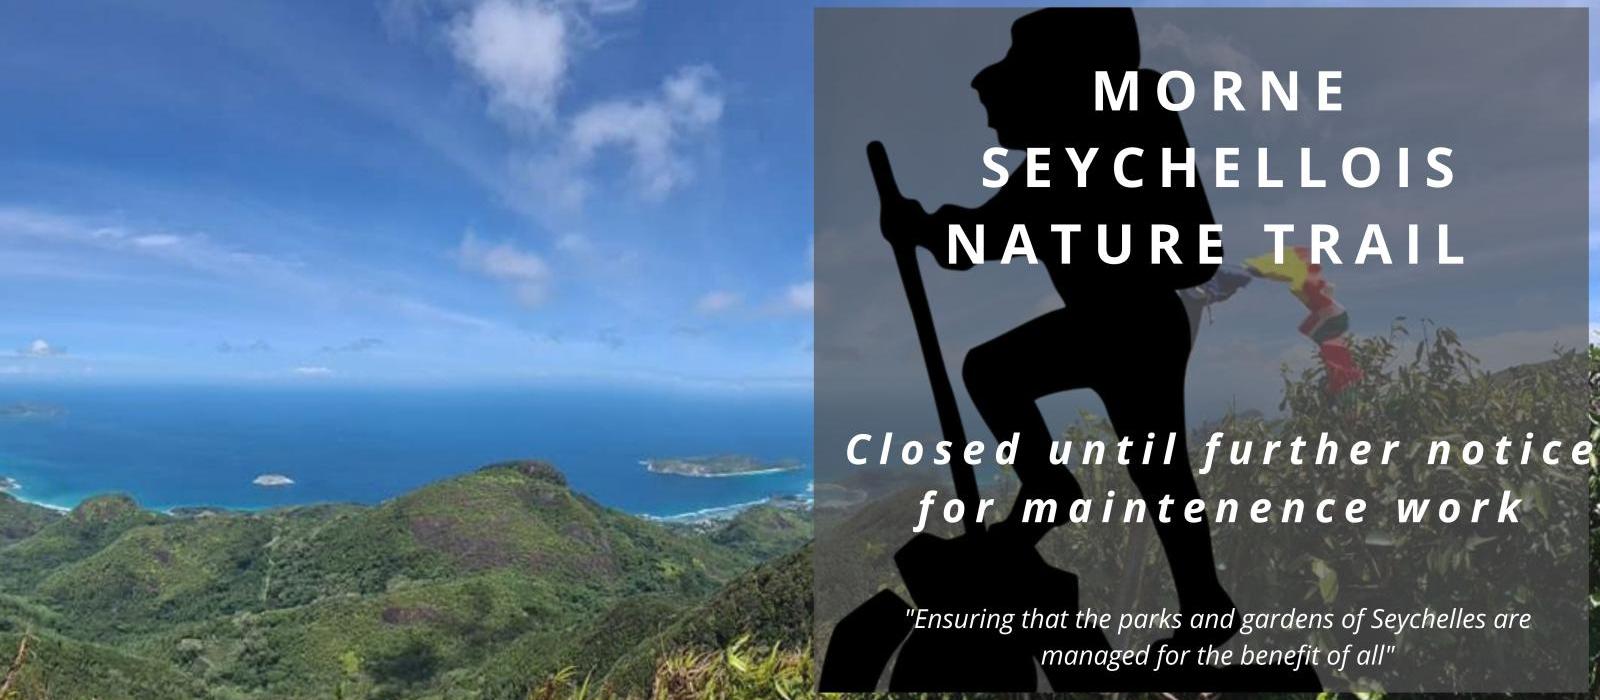 Morne seychellios Trail Closed